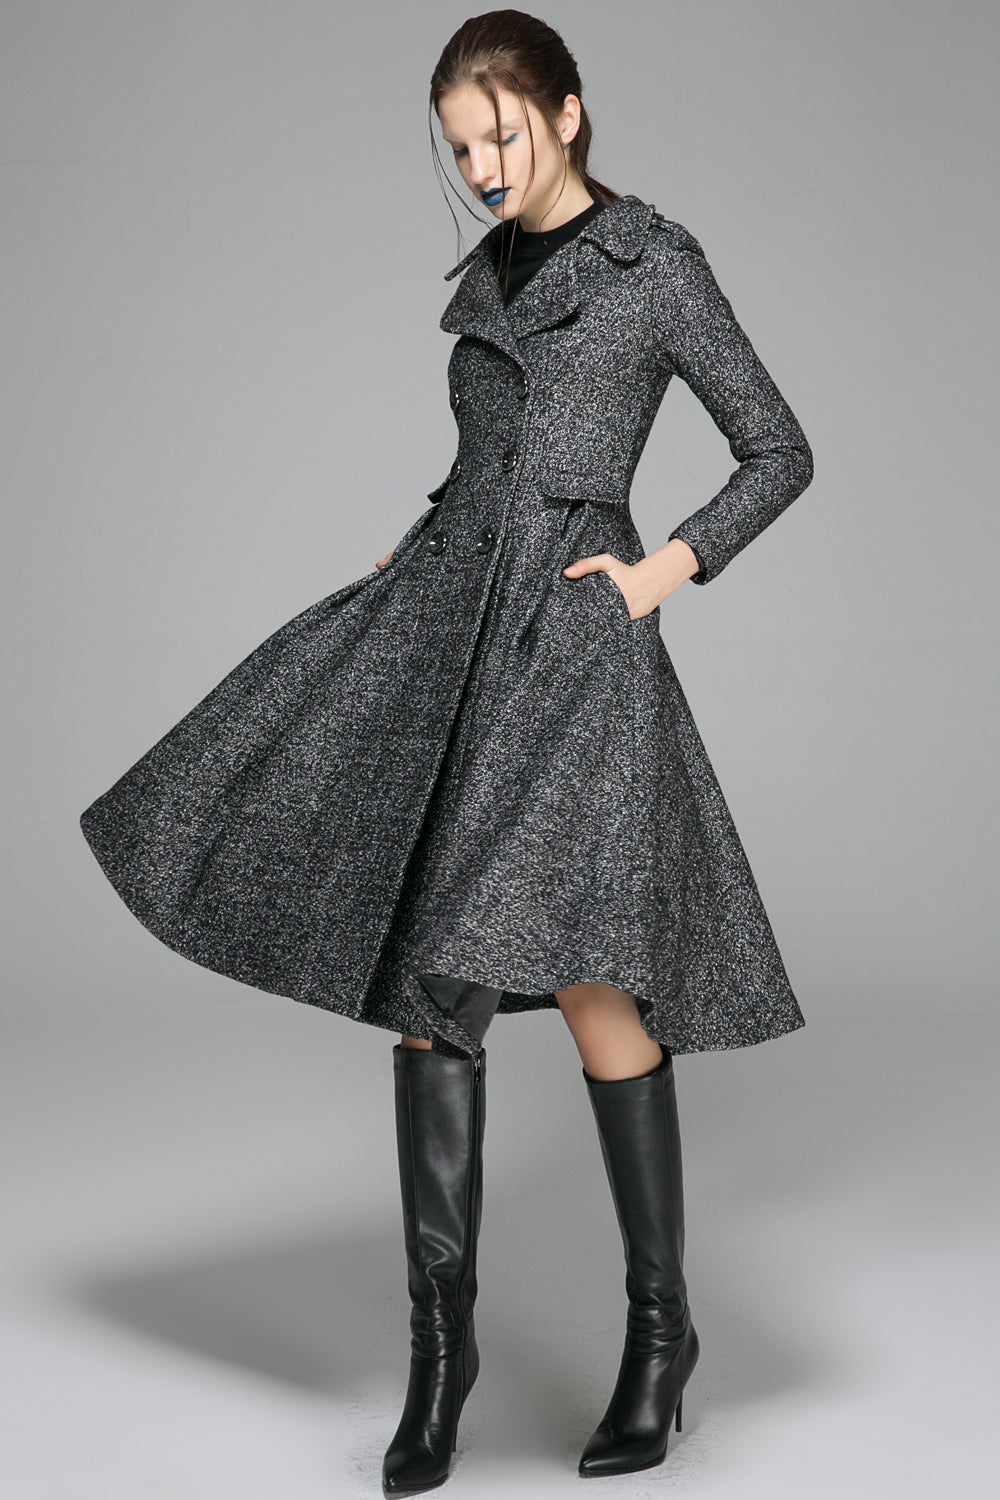 casual womens winter wool pants 4480 – XiaoLizi